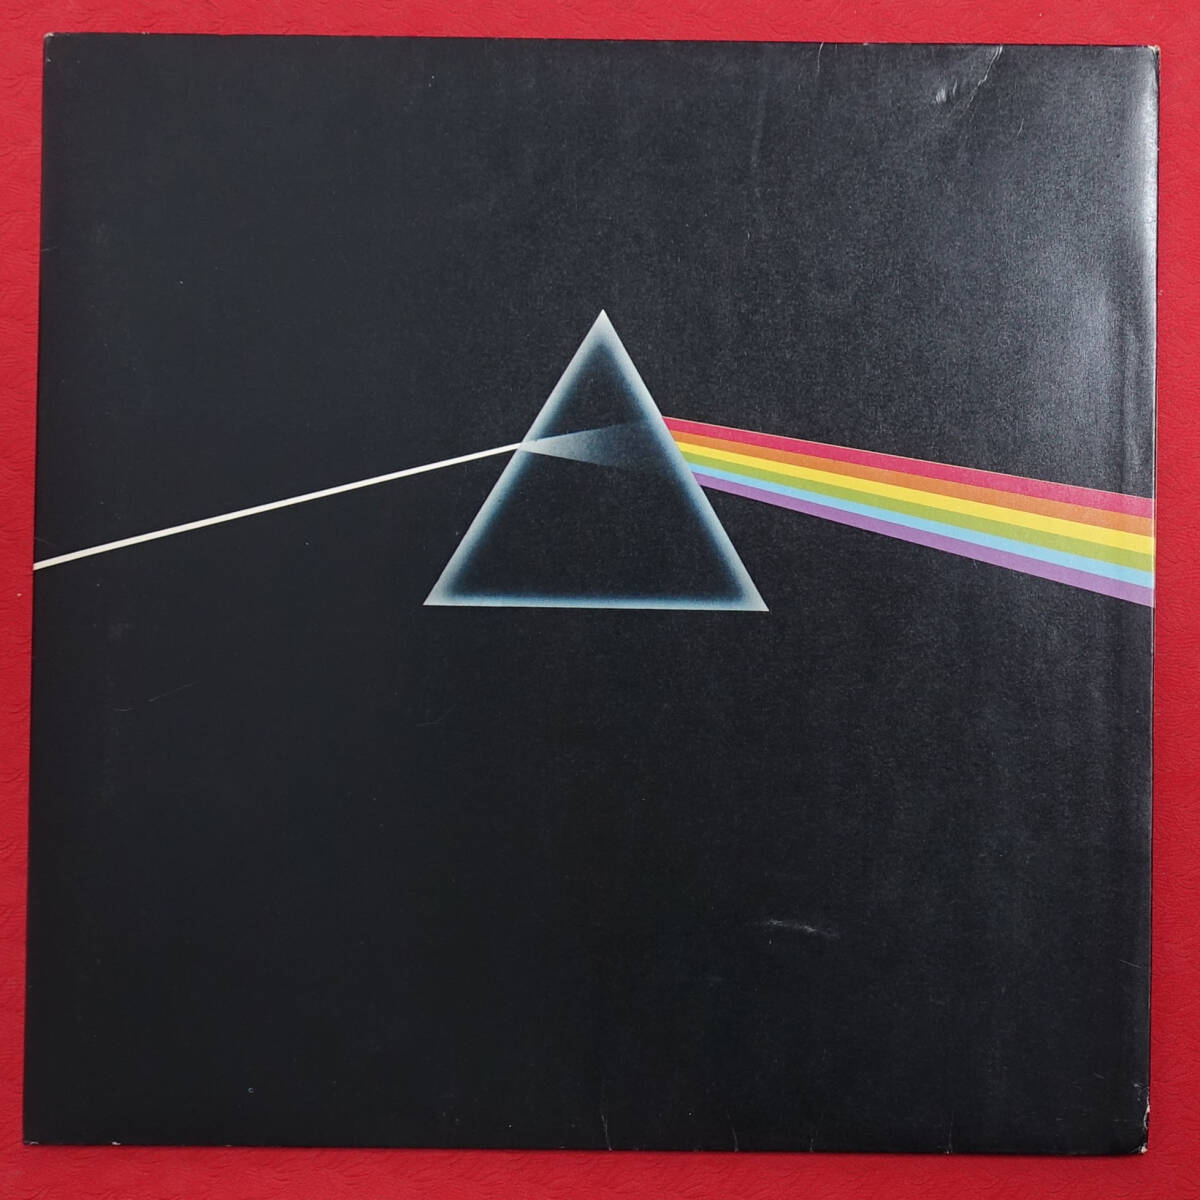 極上品! UK Original HARVEST SHVL 804 The Dark Side of The Moon / Pink Floyd MAT: A3/B3+完品の画像1